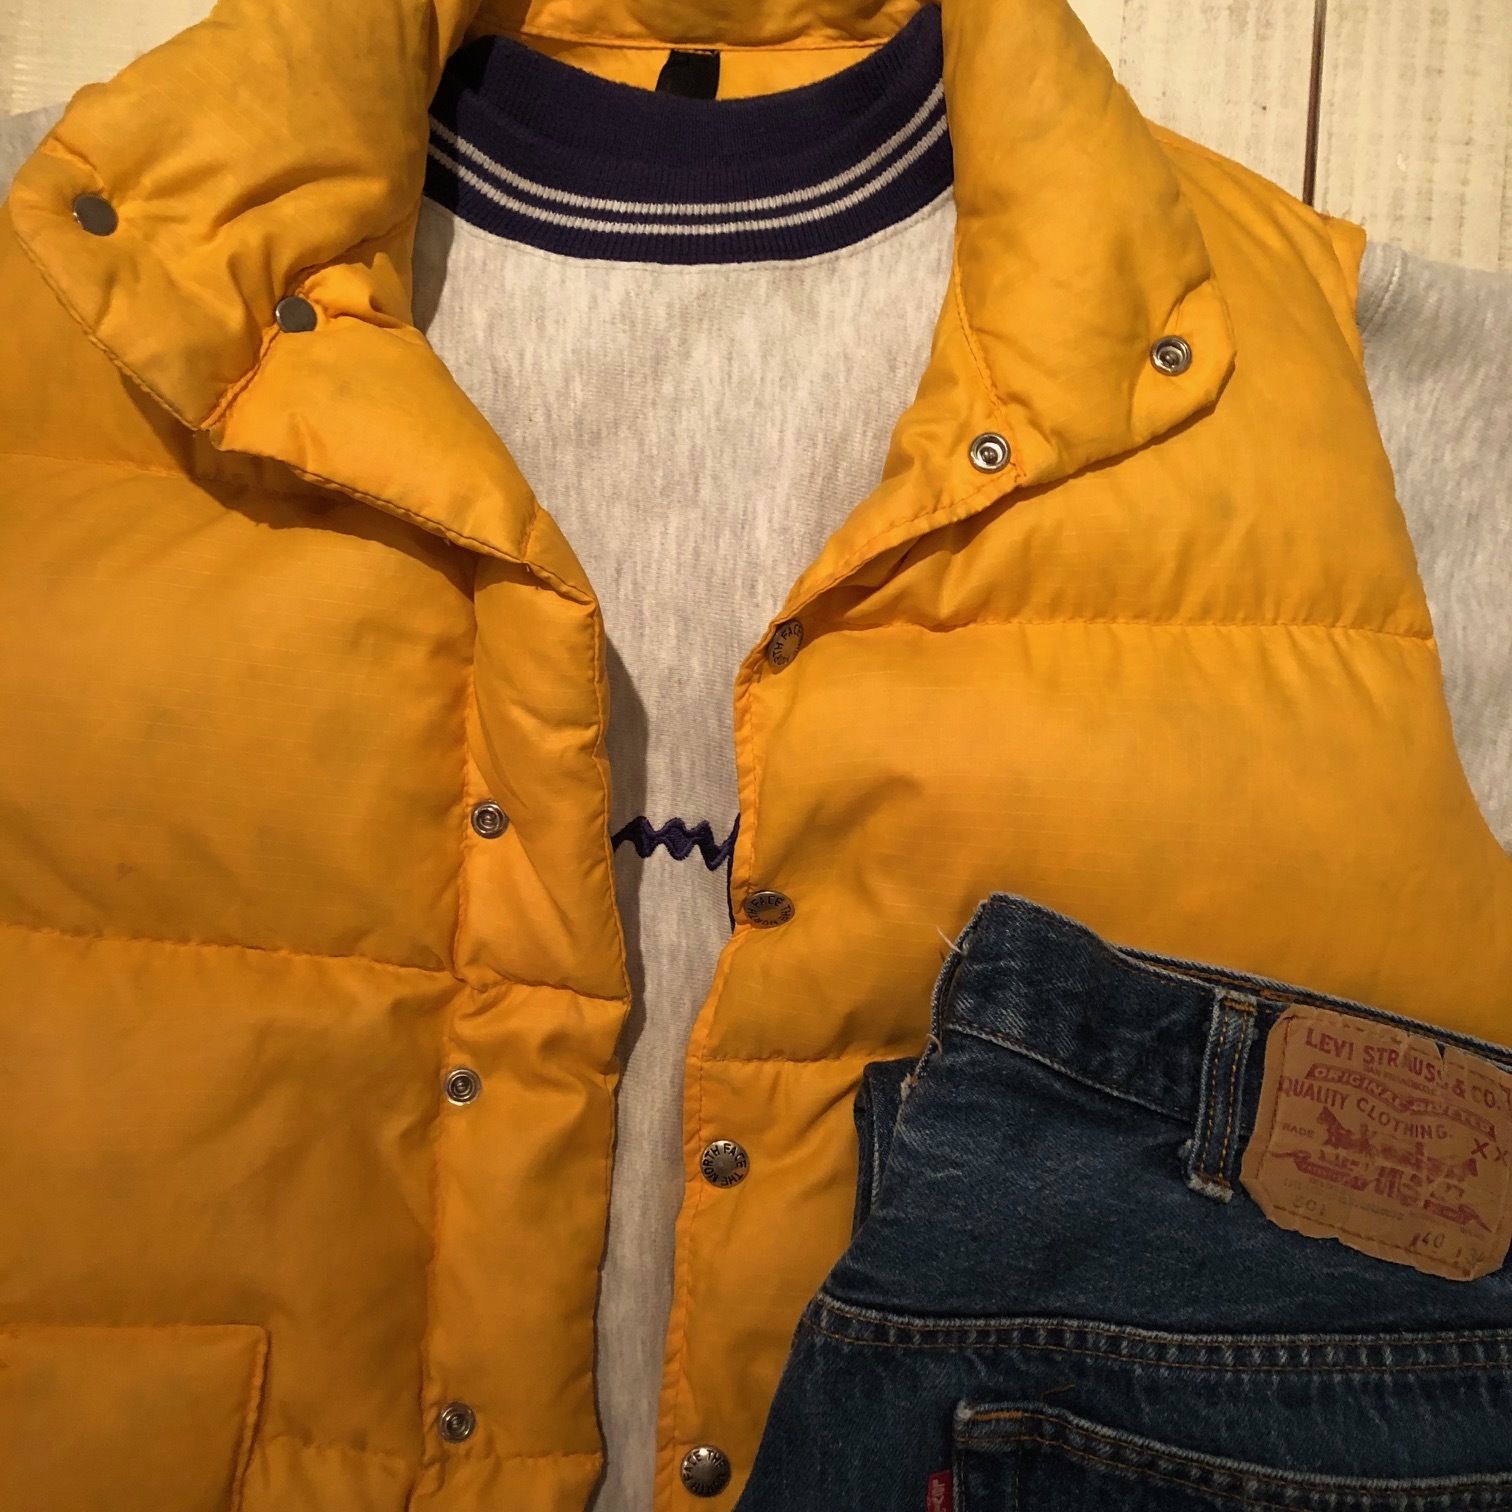 ●本日お取置きJoseph/オレンジジャケット 綺麗なオレンジ色のジャケット